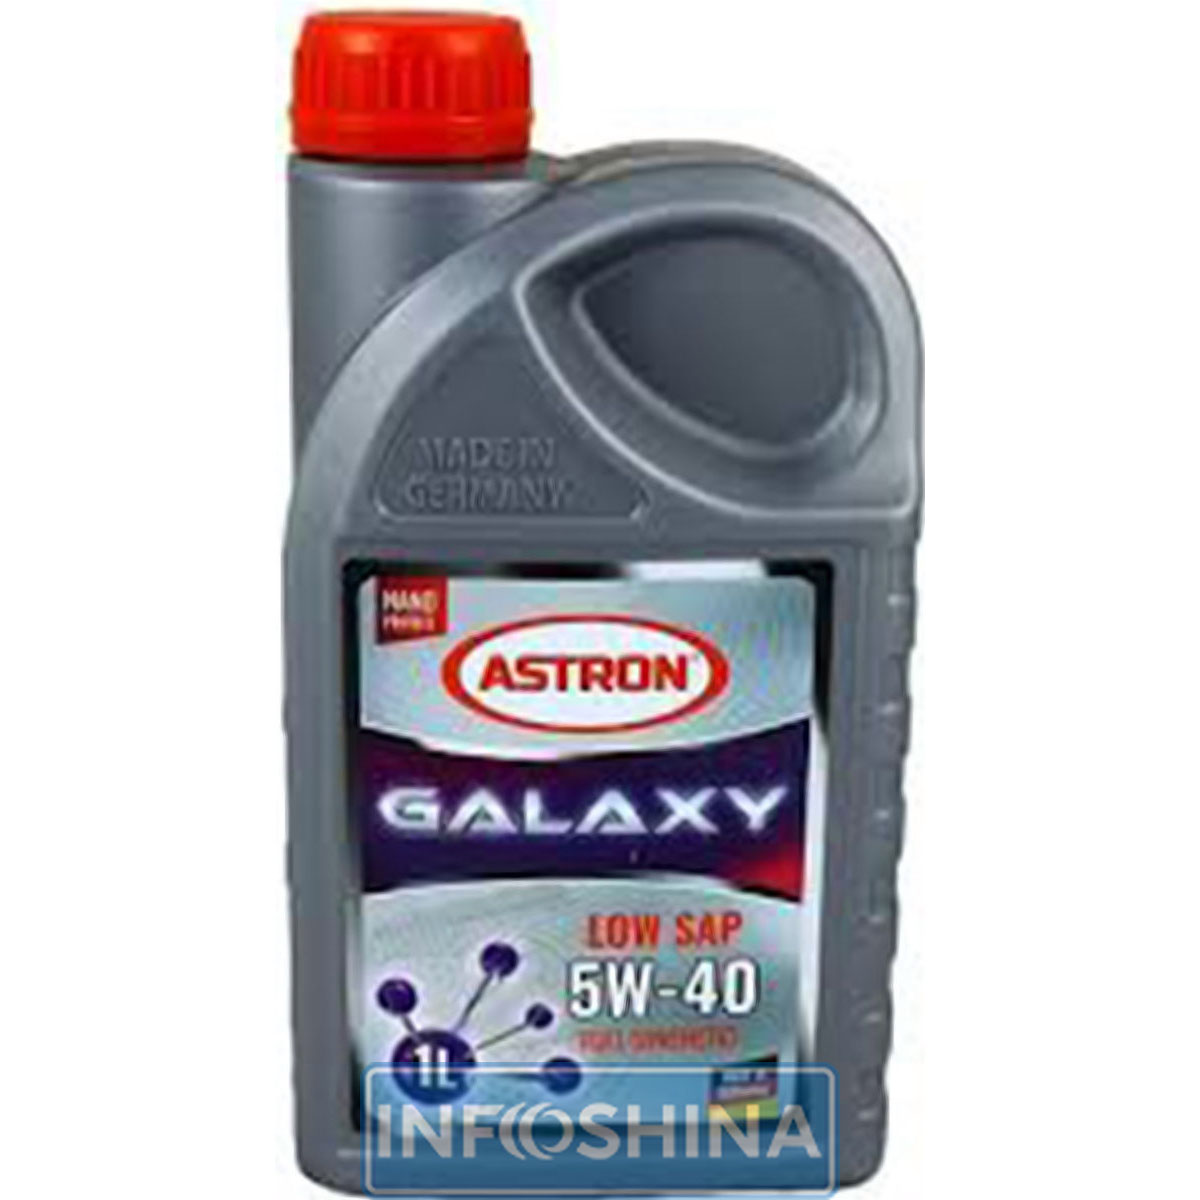 ASTRON Galaxy LOW SAP 5W-40